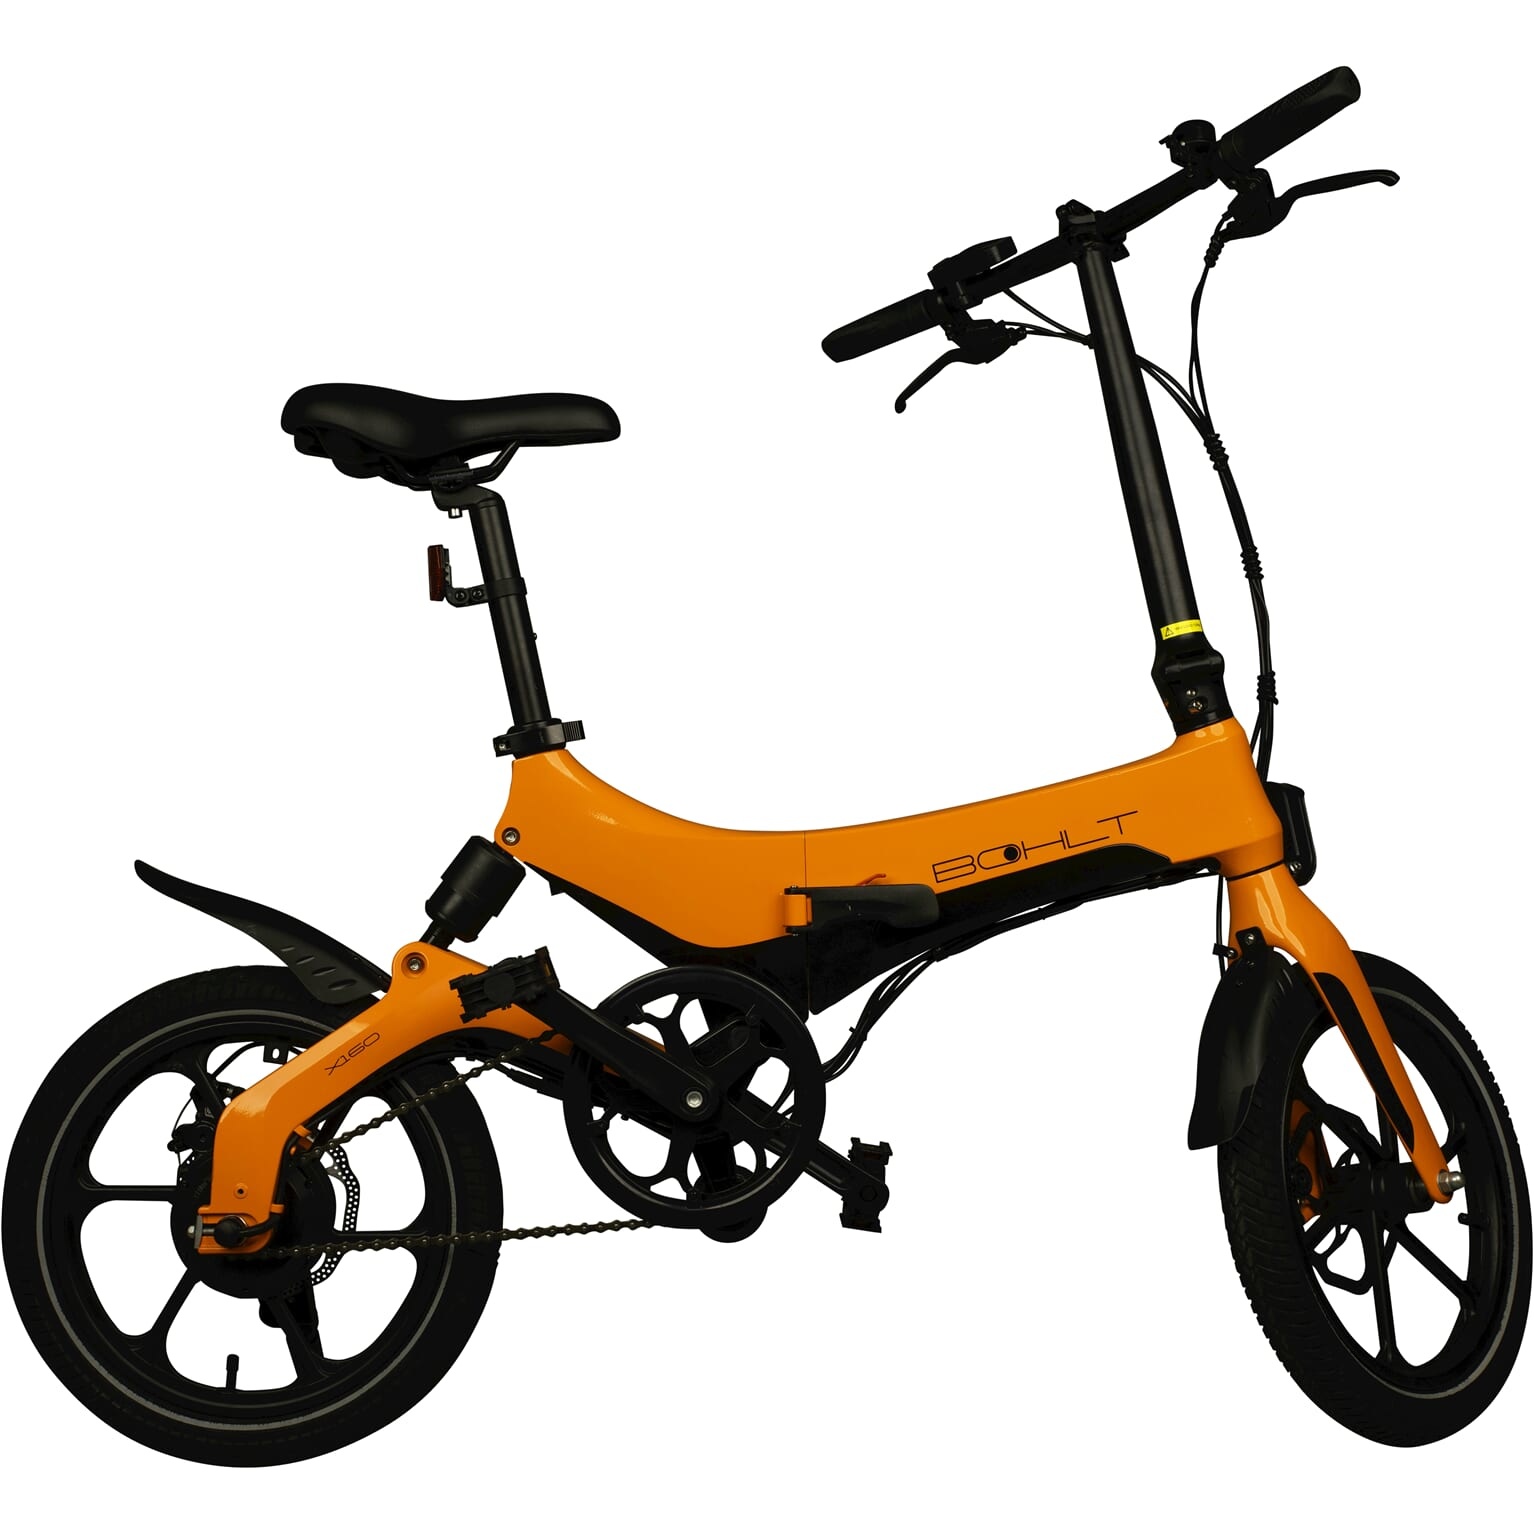 X160 elektrische vouwfiets 16 Oranje kopen? - Premiumbikes